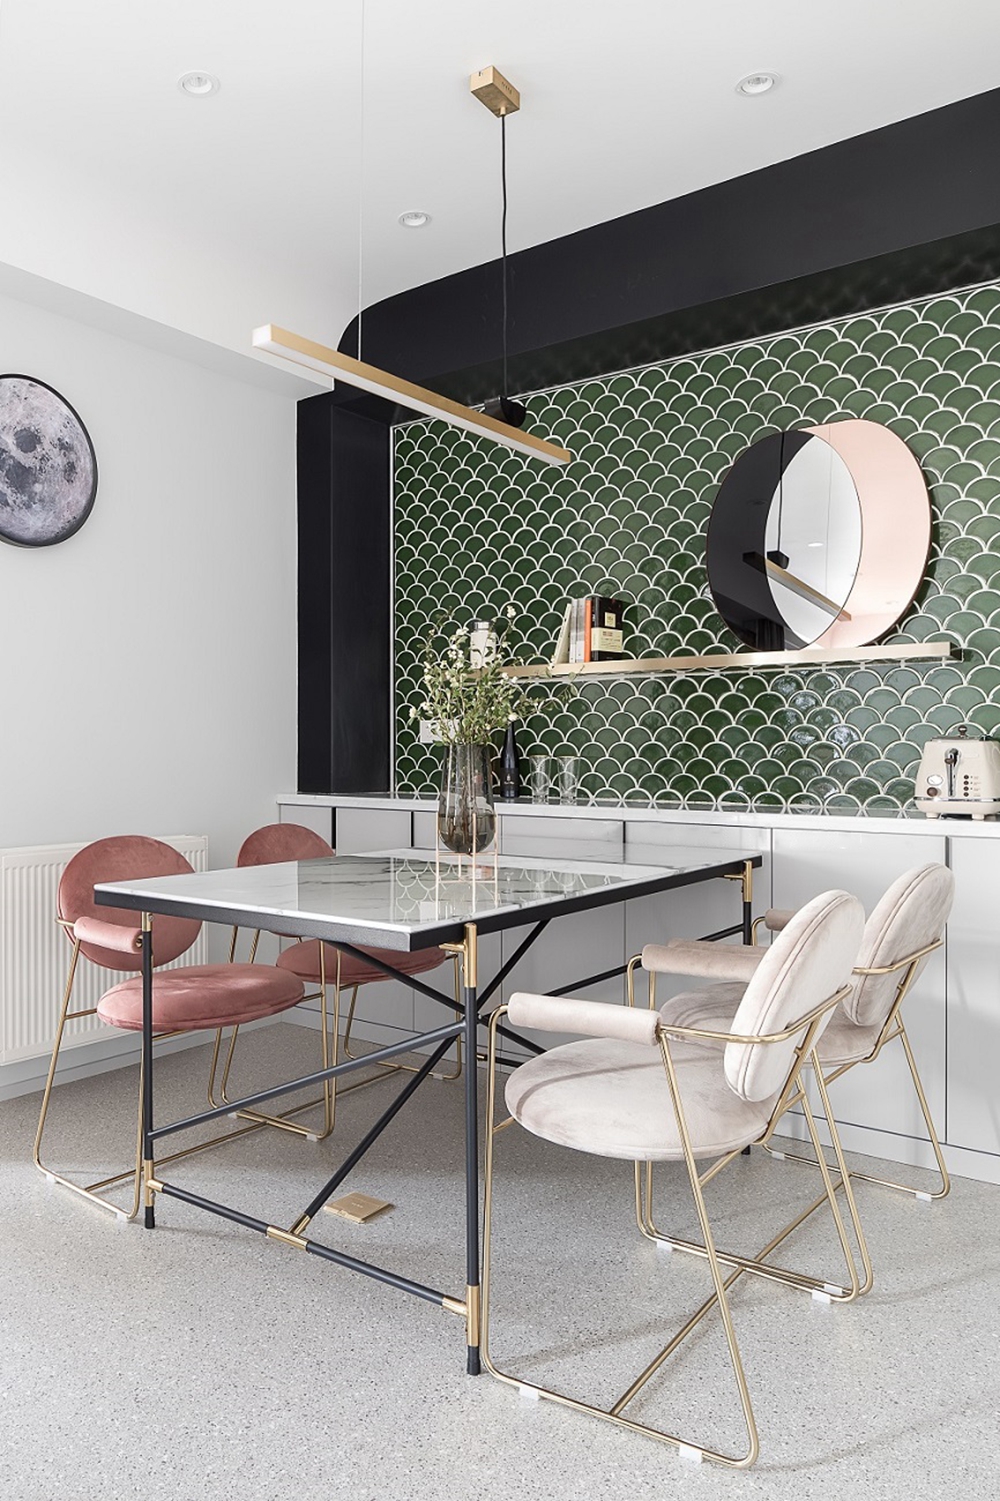 优雅安逸的餐厅空间以白色为主调，浅绿色背景与粉色餐椅相互依偎，很是惬意。